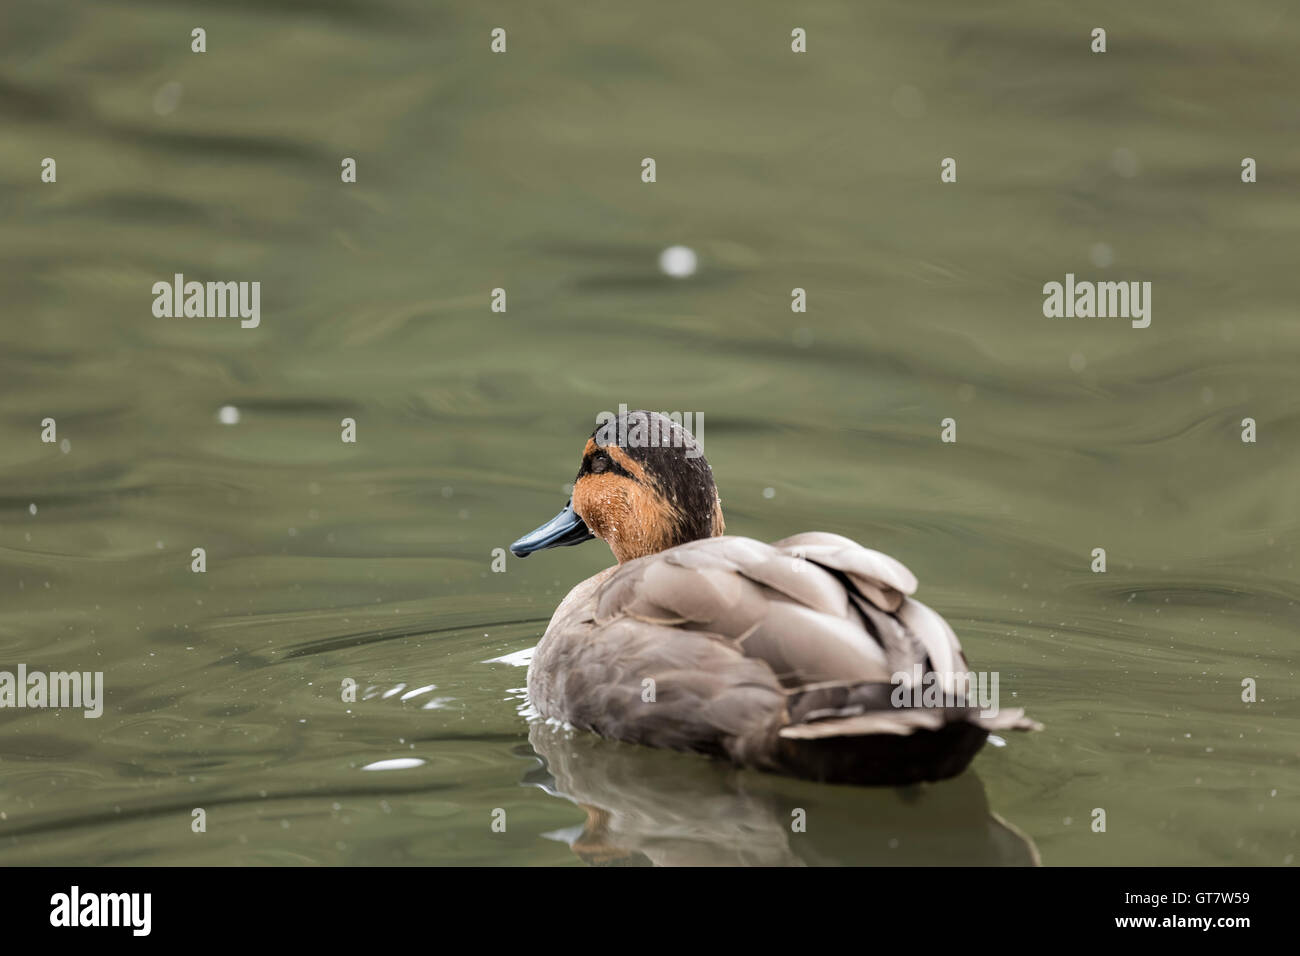 Dunkelheit und Licht Brownheaded Ente mit leichten braunen Federn schwimmen Weg von der Kamera auf einem Teich auf einem isolierten Hintergrund Stockfoto